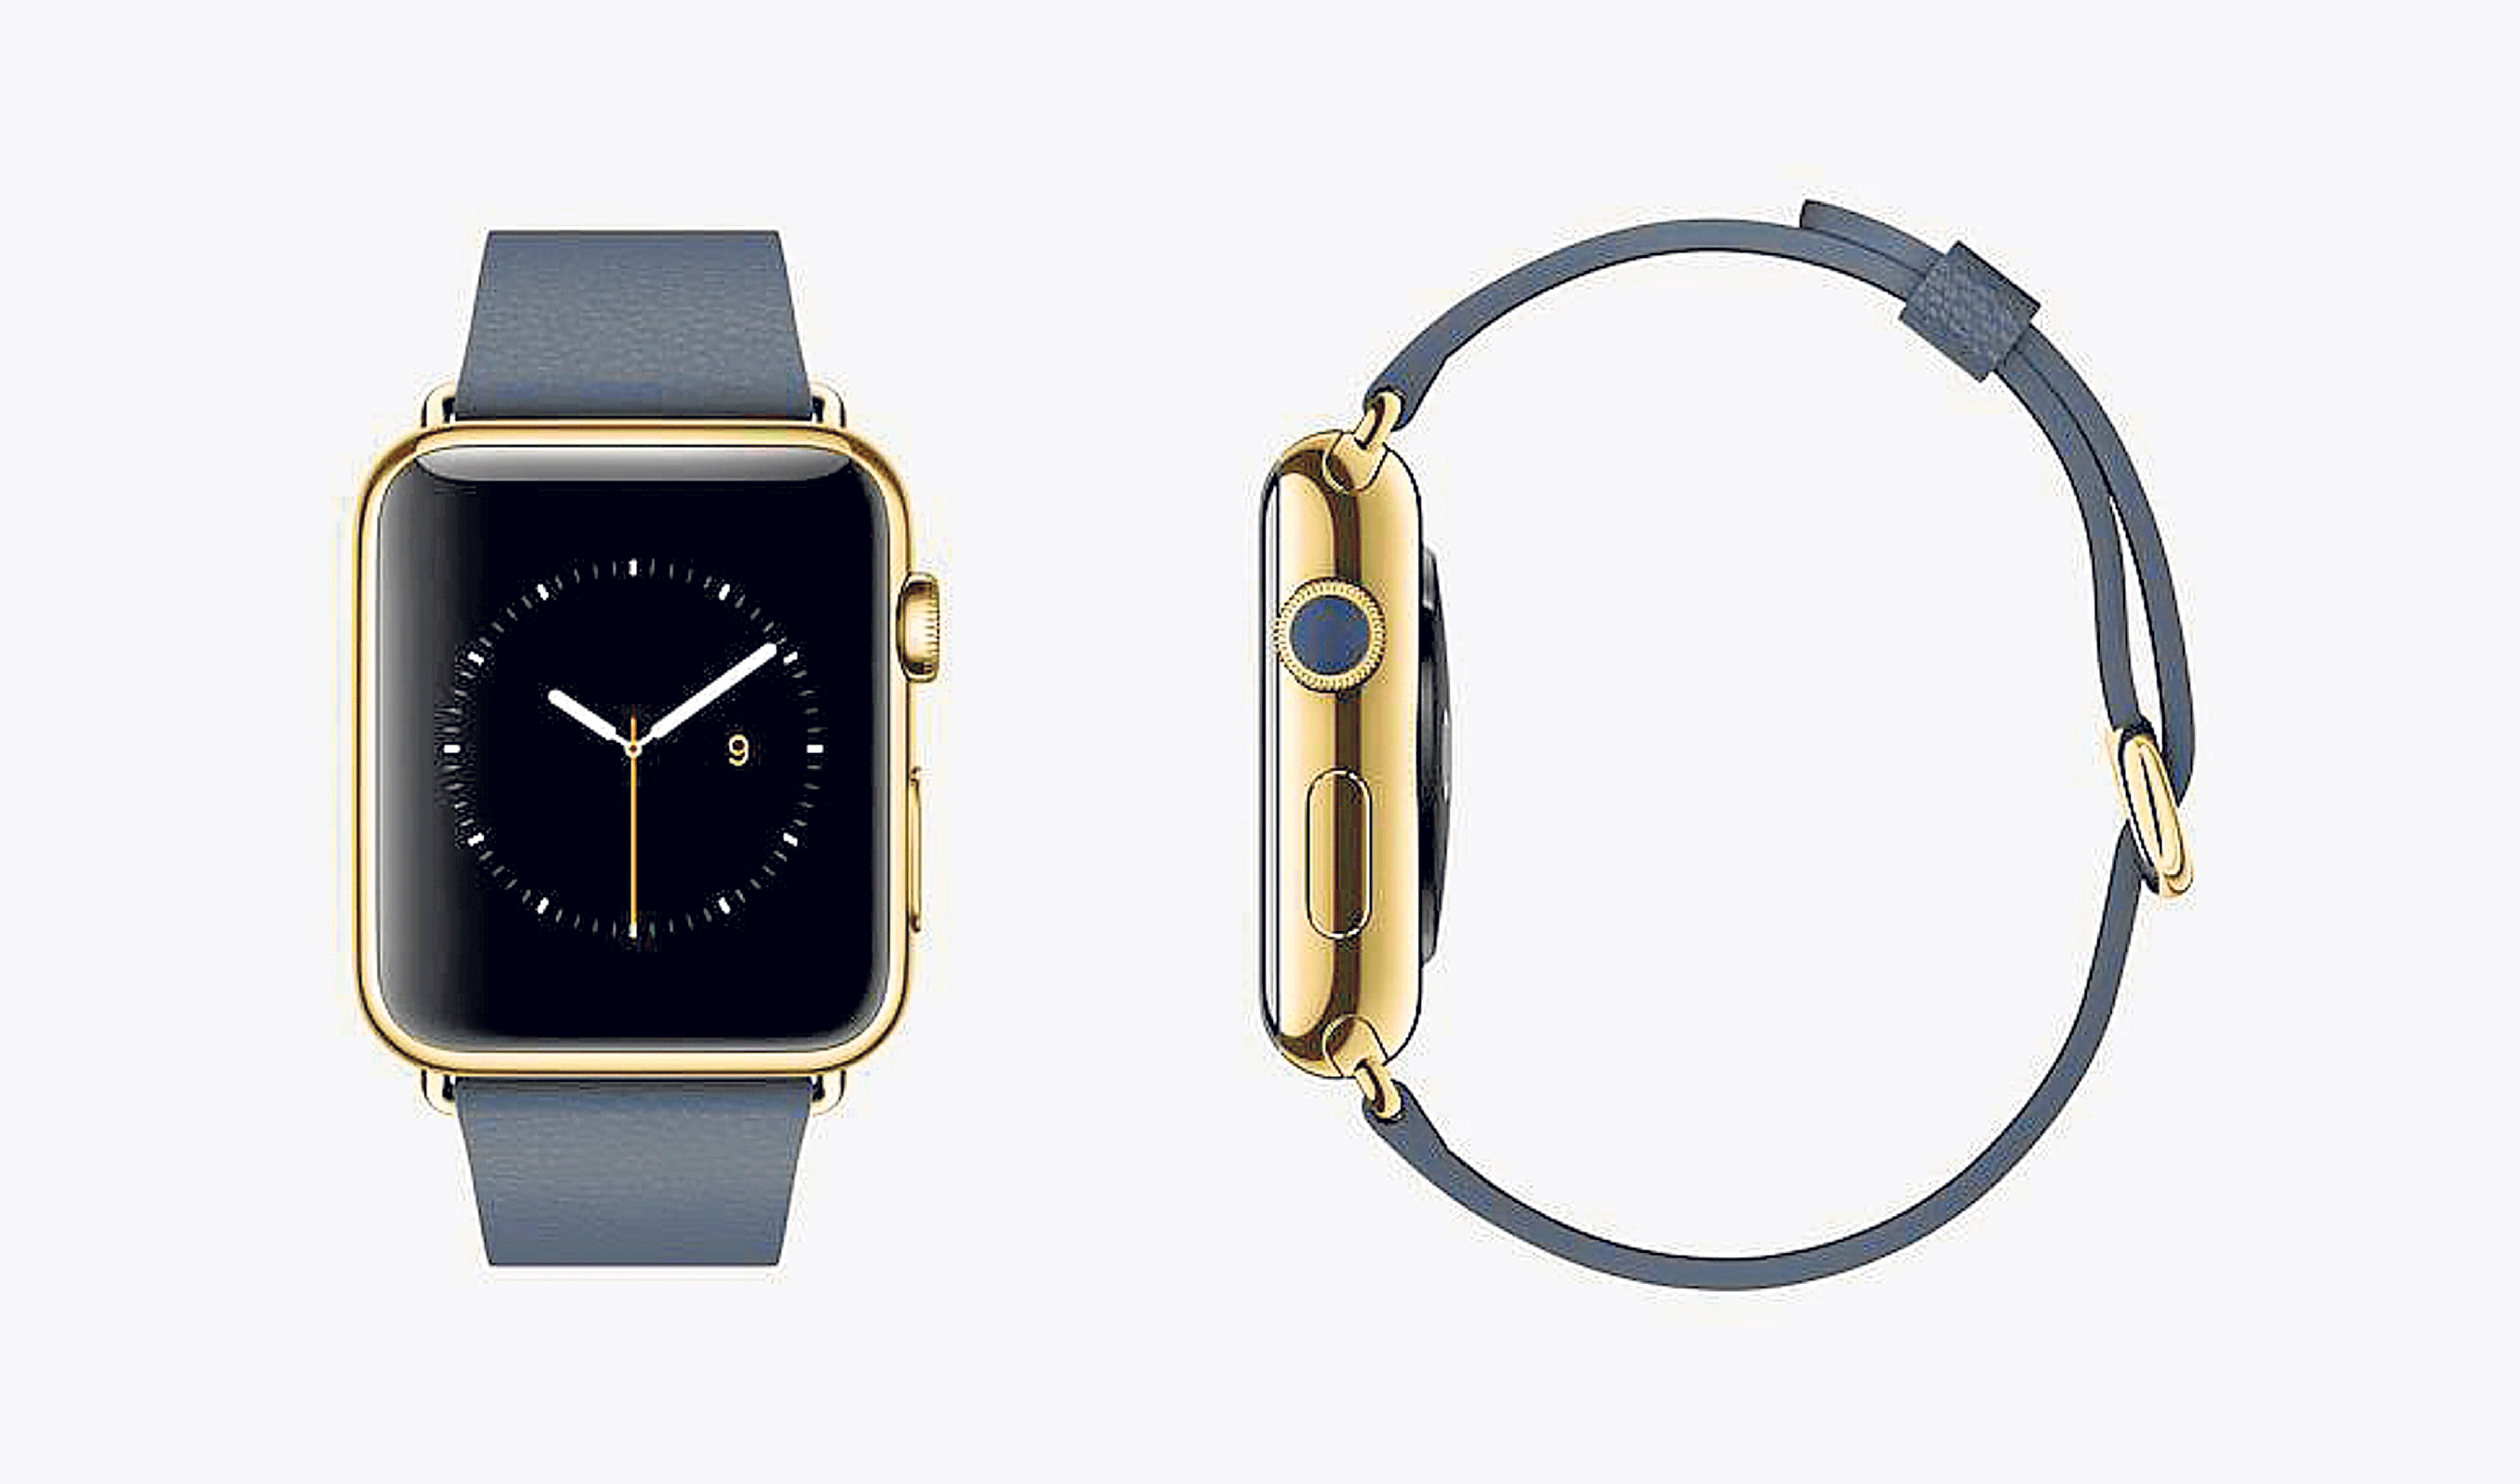 El más exclusivo. El Apple Watch Edition en oro amarillo o rosa cuesta de 10.000 a 17.000 dólares.